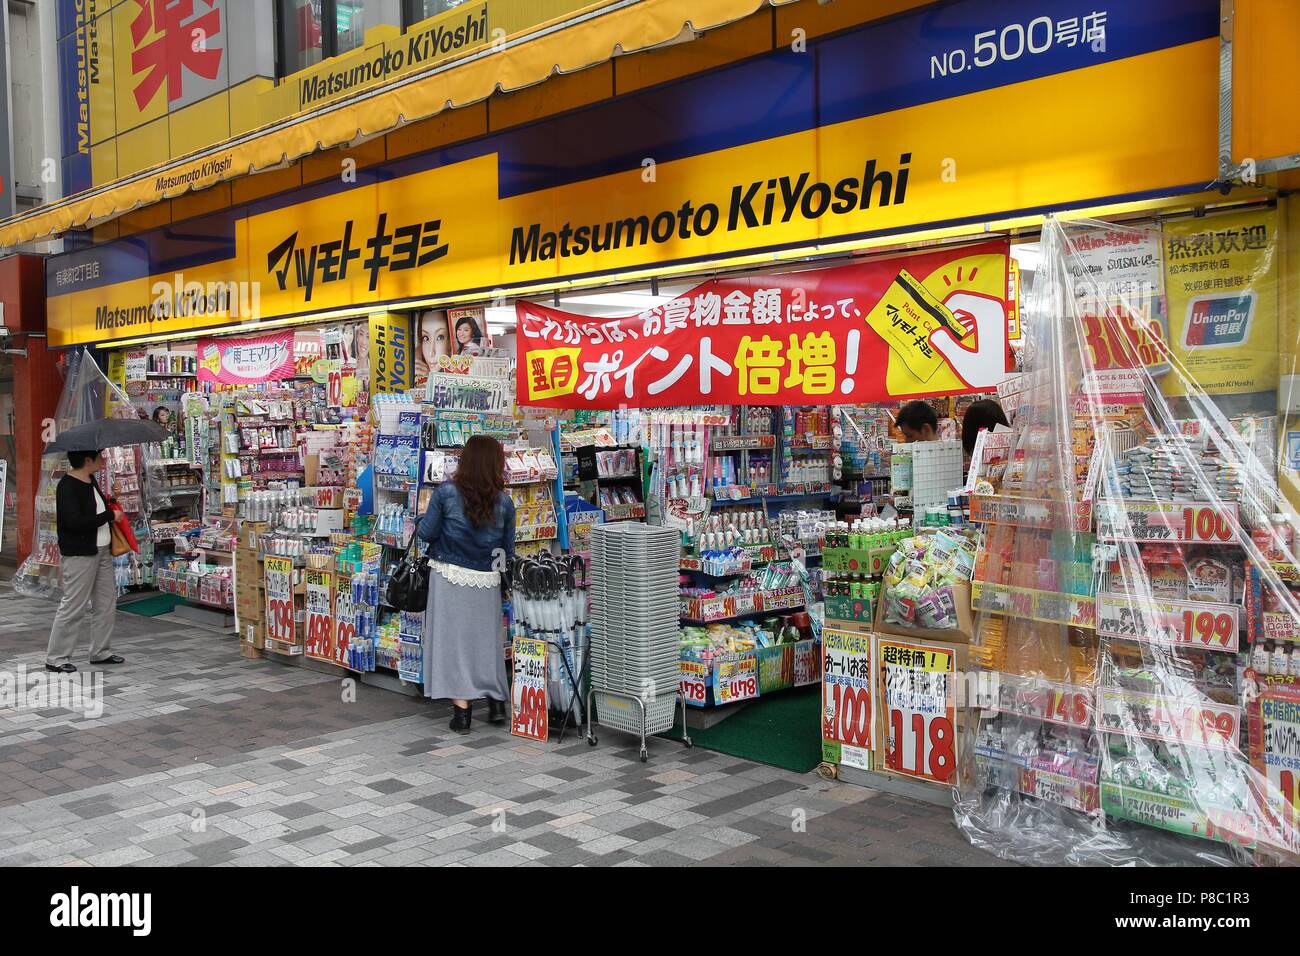 TOKYO, JAPAN - MAY 9, 2012: People visit Matsumoto KiYoshi drugstore in Tokyo. Matsumoto KiYoshi has more than 2,000 pharmacy stores in Japan. Stock Photo